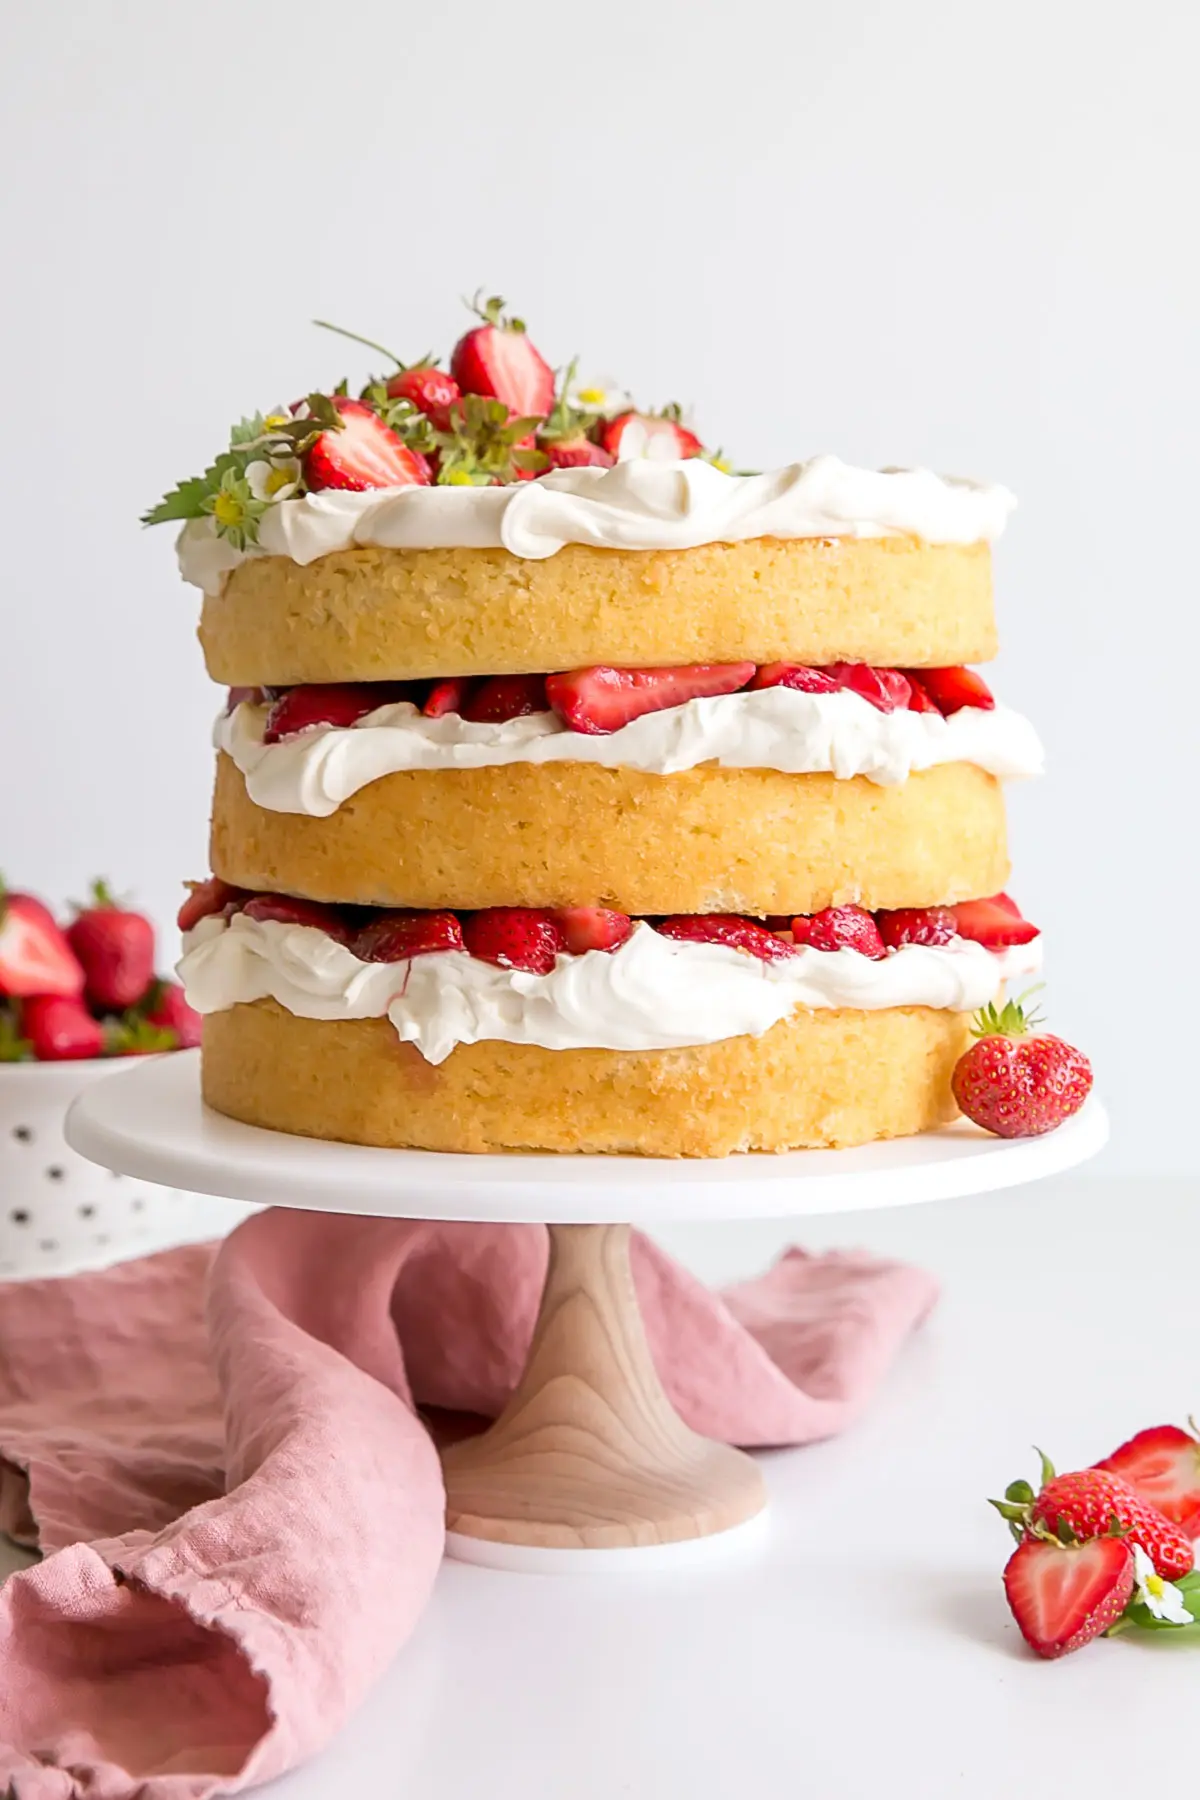 Strawberry shortcake cake decorated naked cake style.